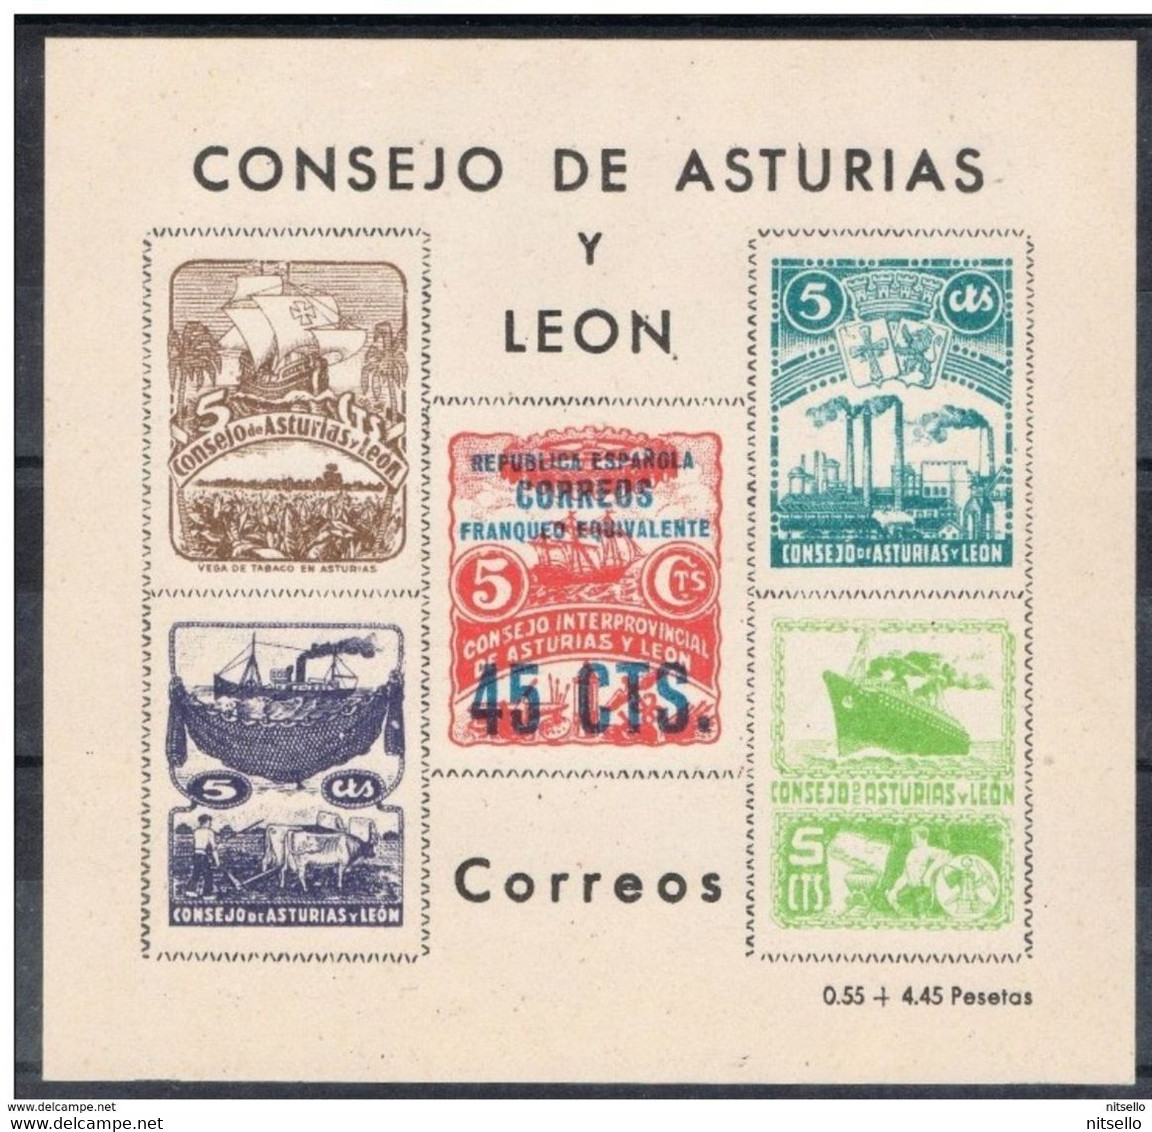 LOTE 1385  ///  CONSEJO DE ASTURIAS Y LEON  45 Ctos        ¡¡¡¡¡¡ LIQUIDATION !!!!!!! - Asturies & Leon